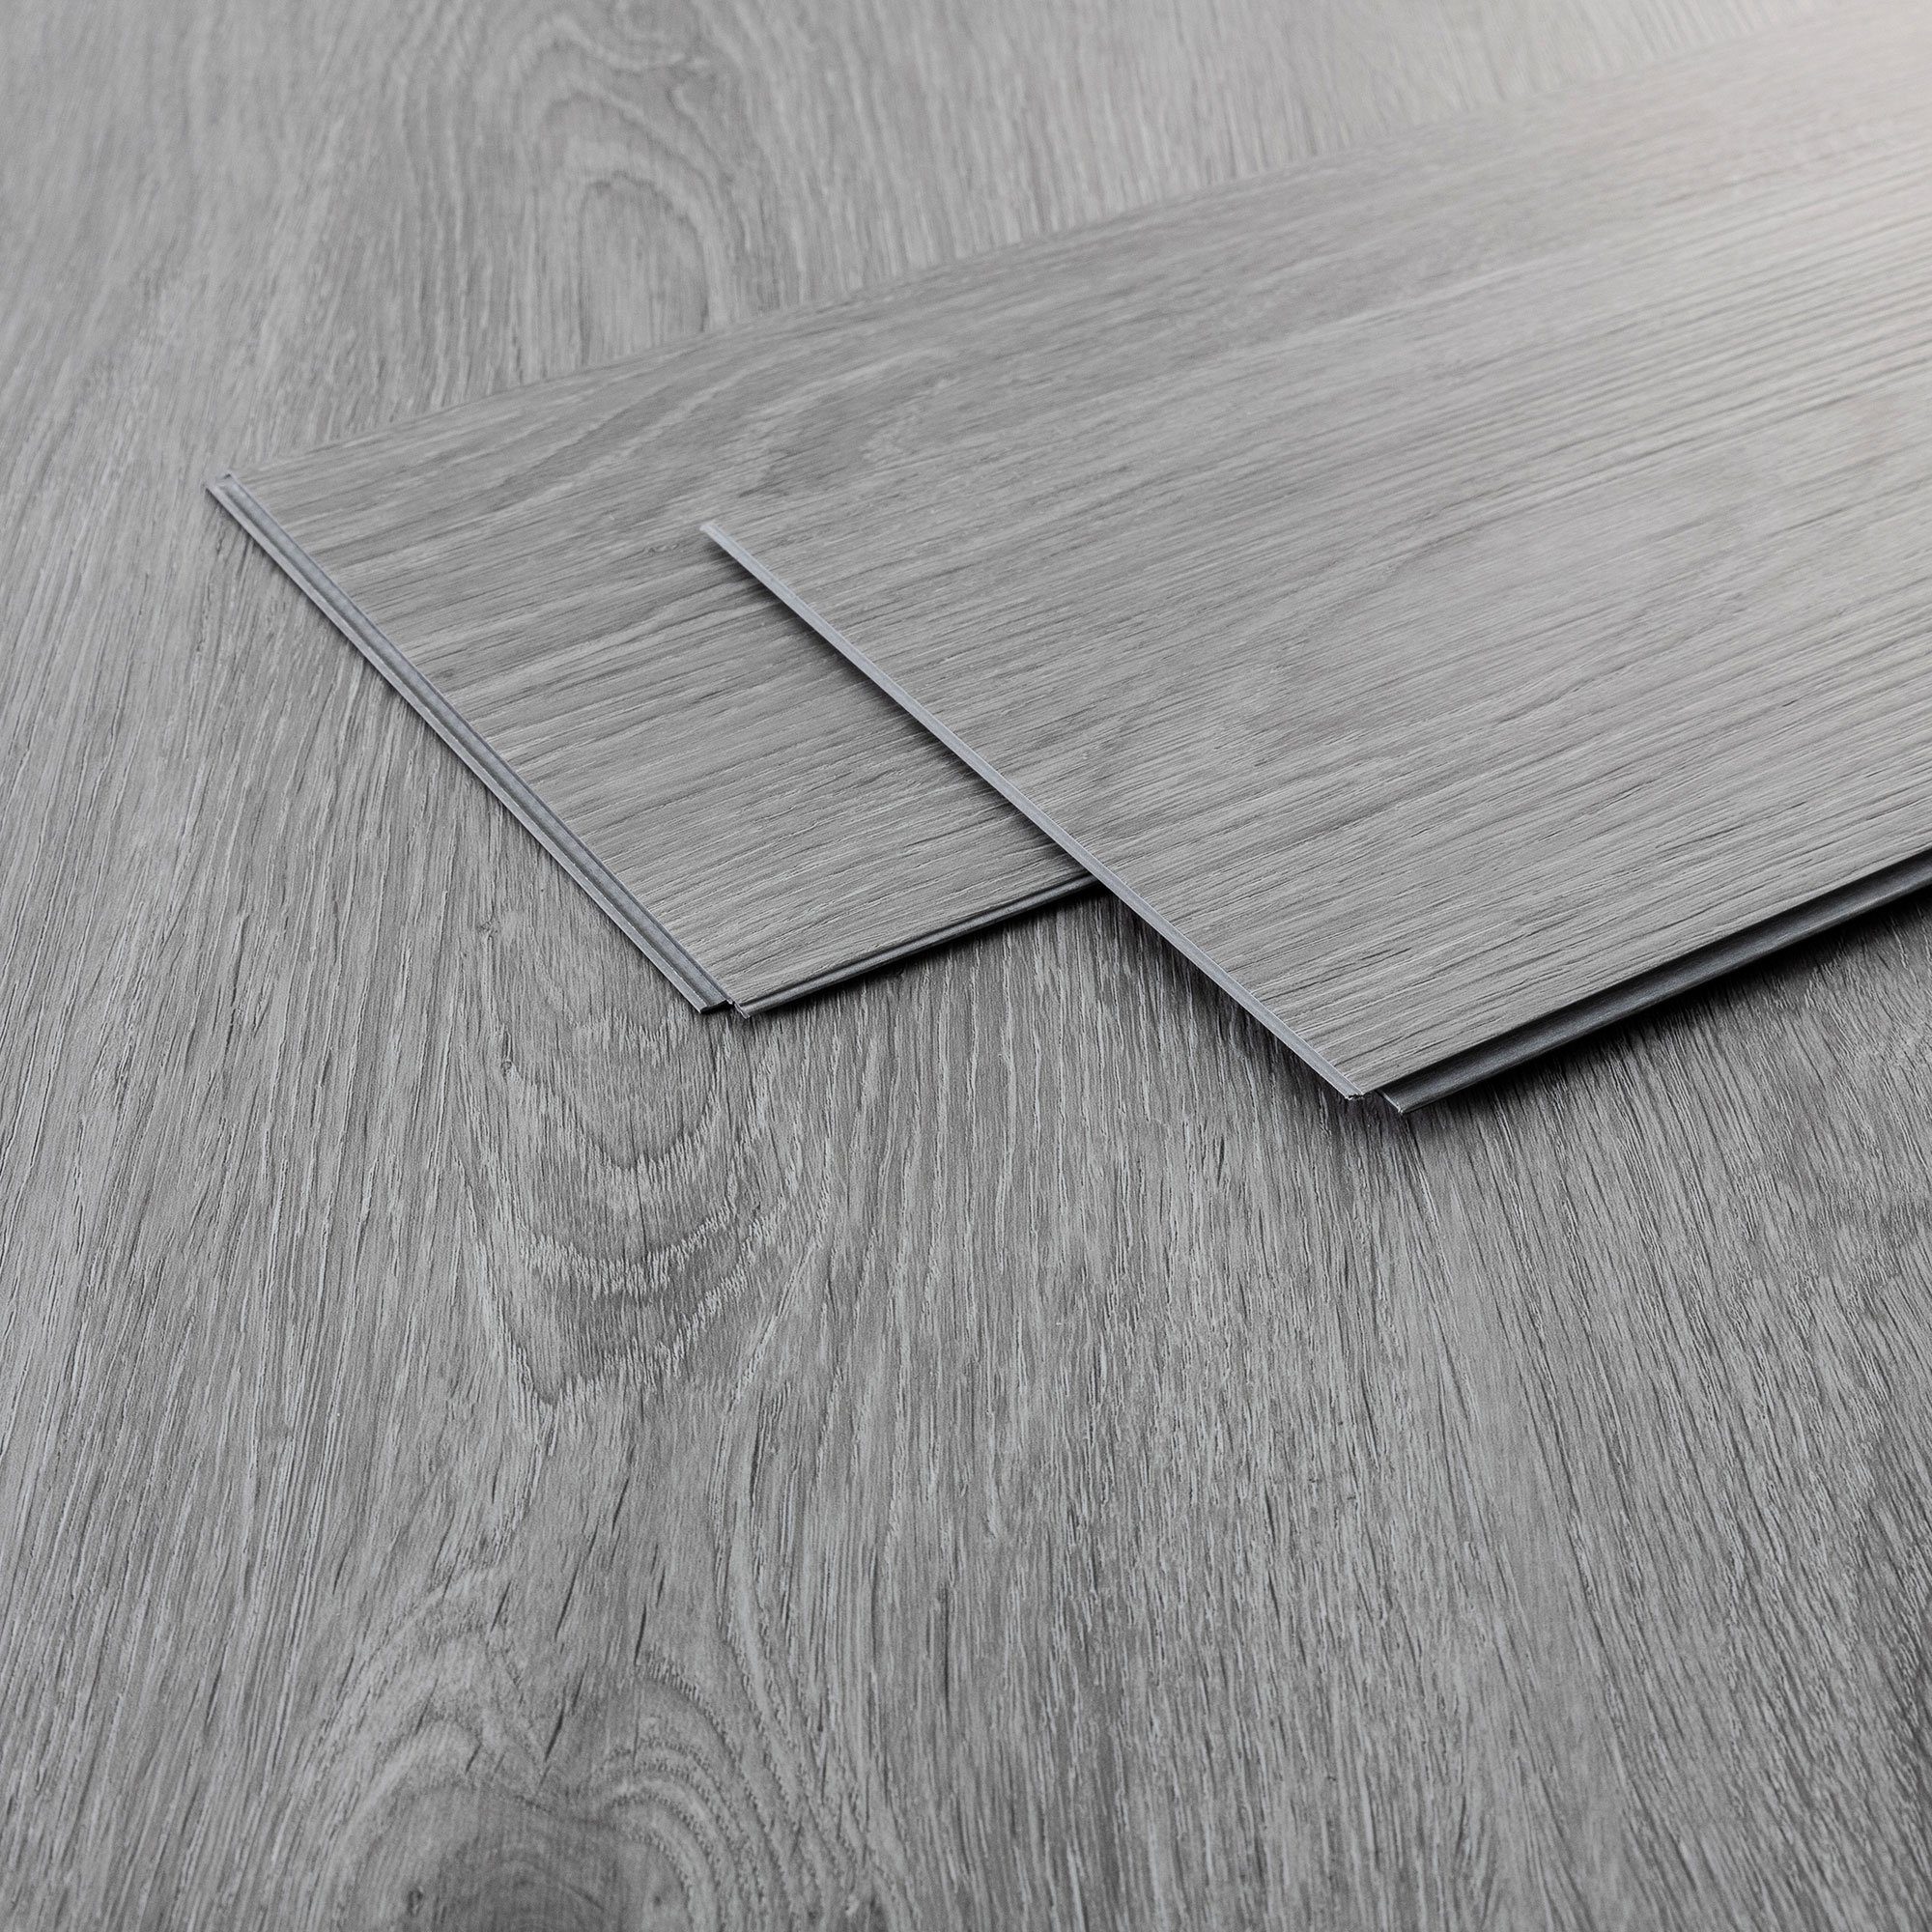 ML-DESIGN Vinylboden PVC Click Vinyl-Dielen Einfache Verlegung wasserfest, Bodenbelag 122x18x0,42 cm 1,54m²/7 Dielen Grau rutschfest